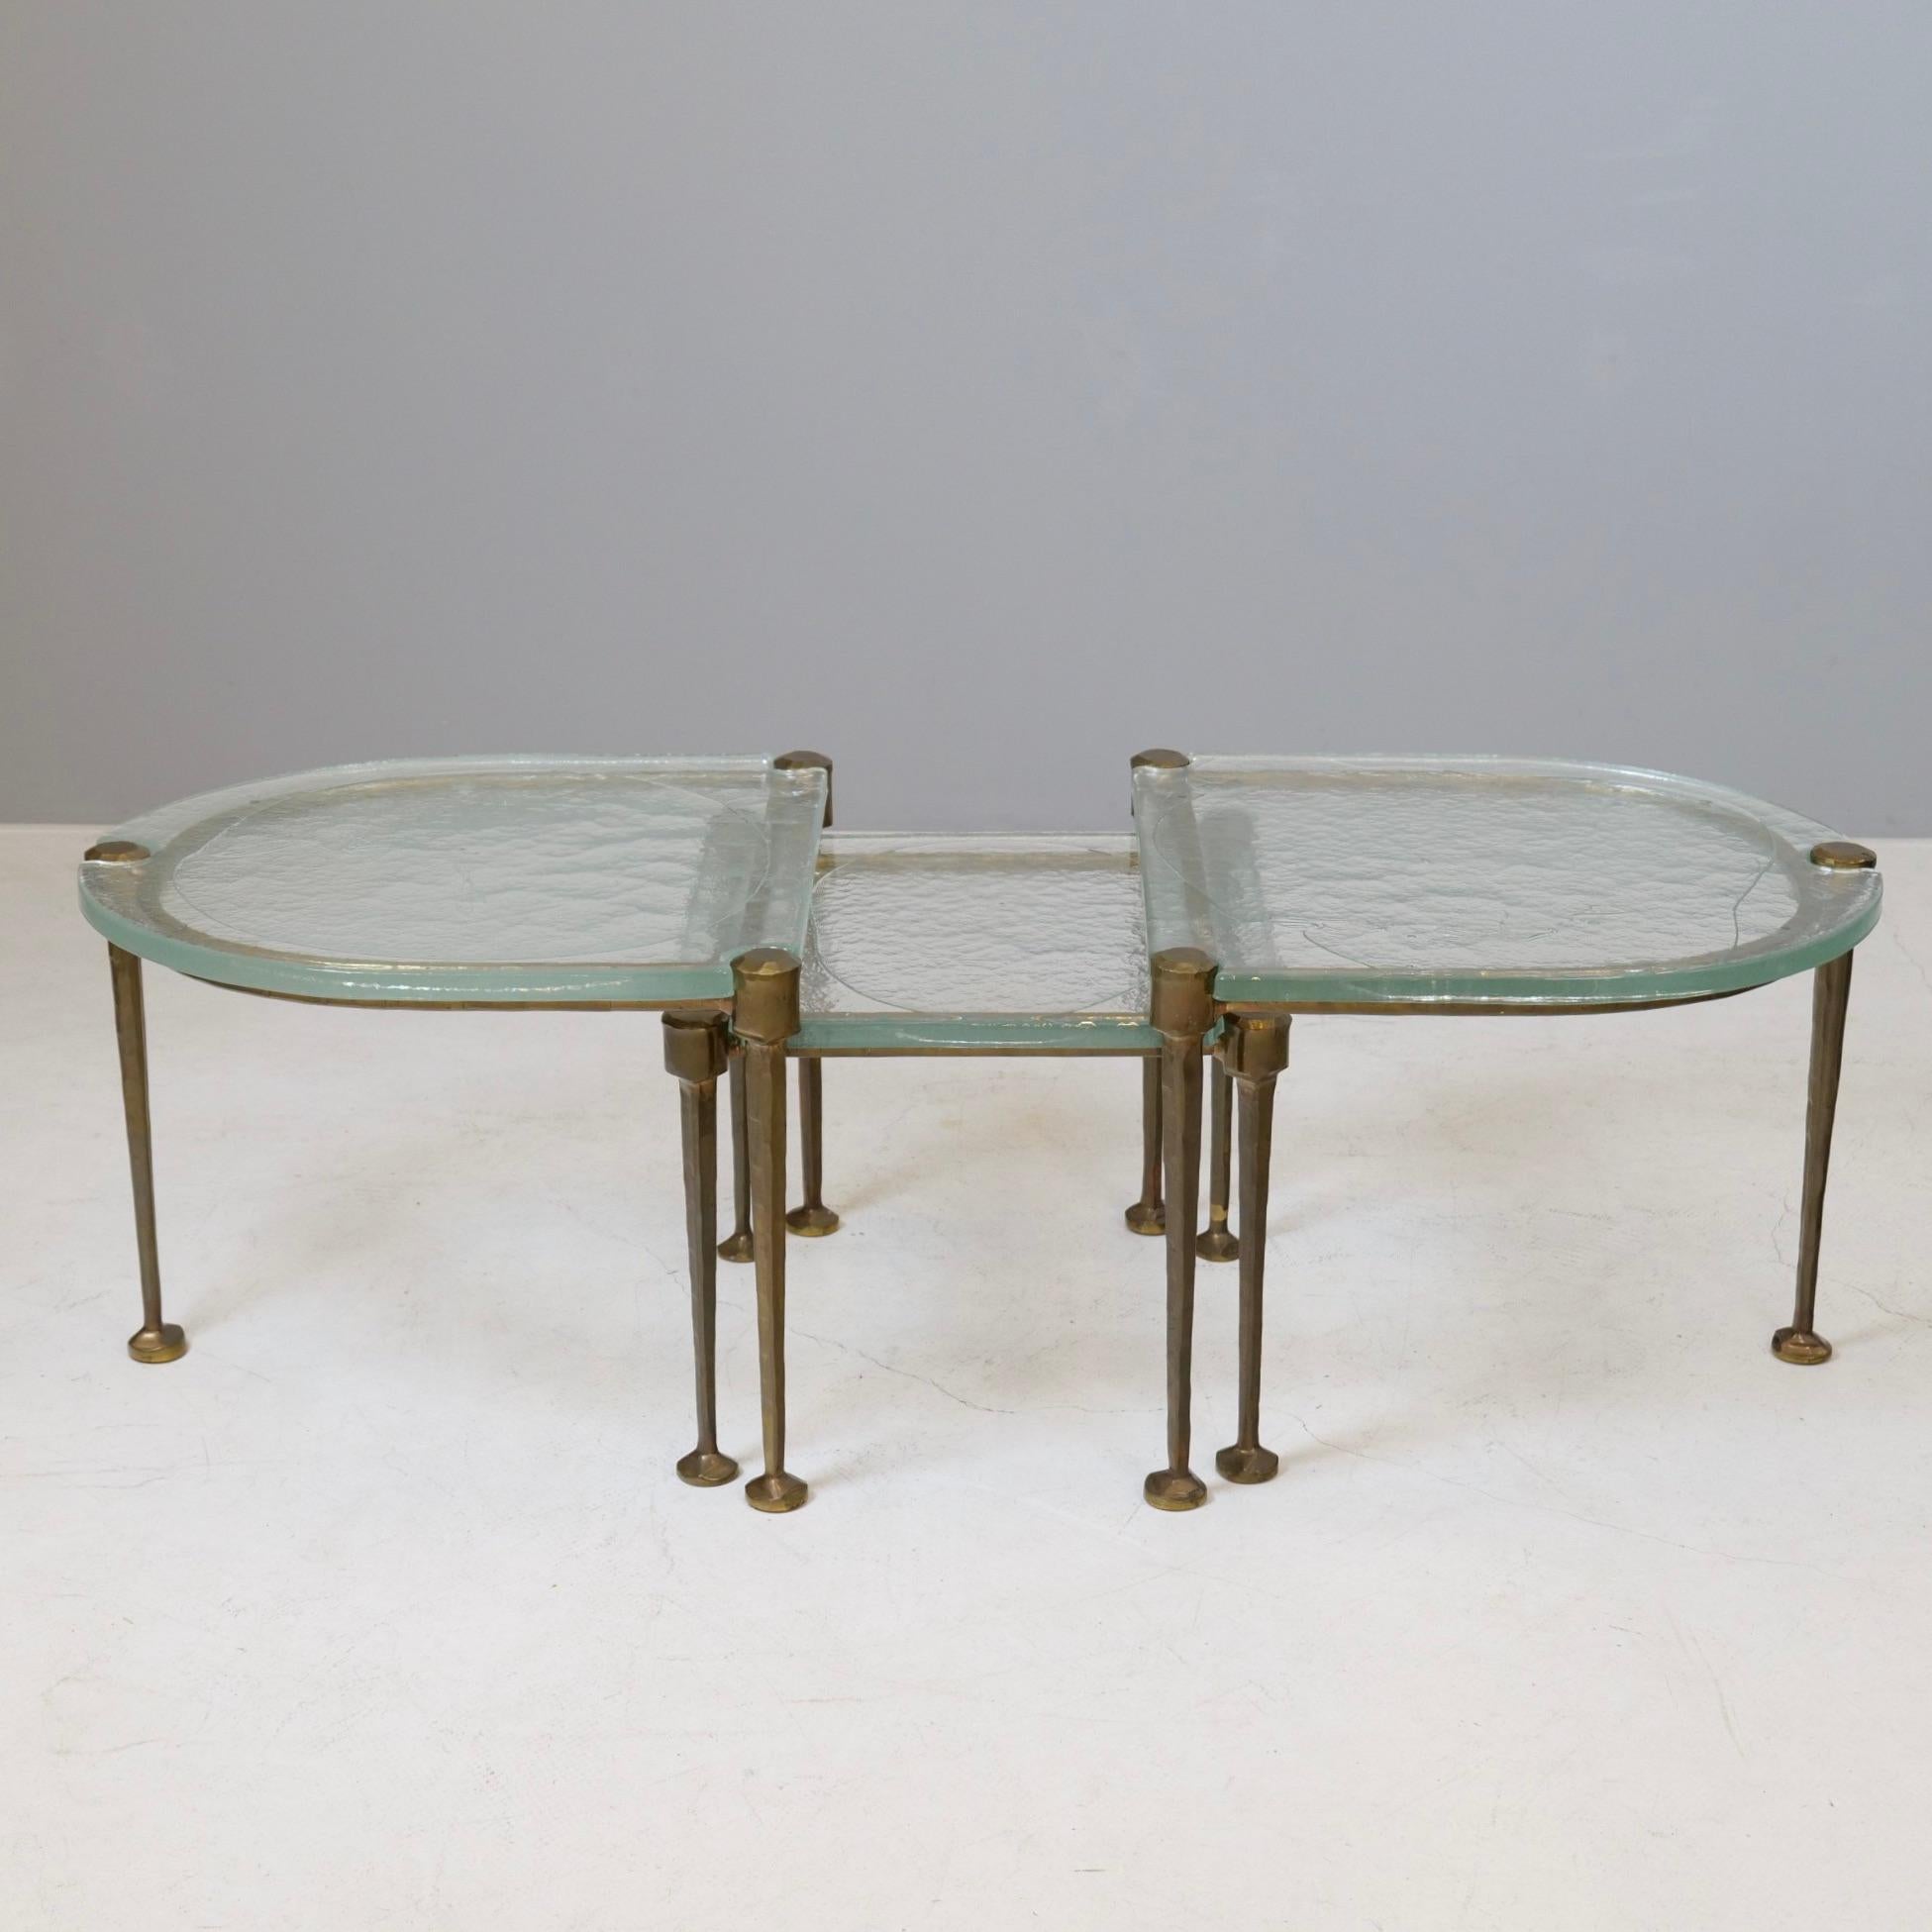 Brutalistische Tische aus geschmiedeter Bronze und gegossenem Glas aus den 1980er Jahren Das Schmiedeverfahren von Bronze ist eine von Lothar Klute entwickelte Bronzelegierung.

In der heutigen Zeit wäre die Herstellung solcher Tische aus Kosten-